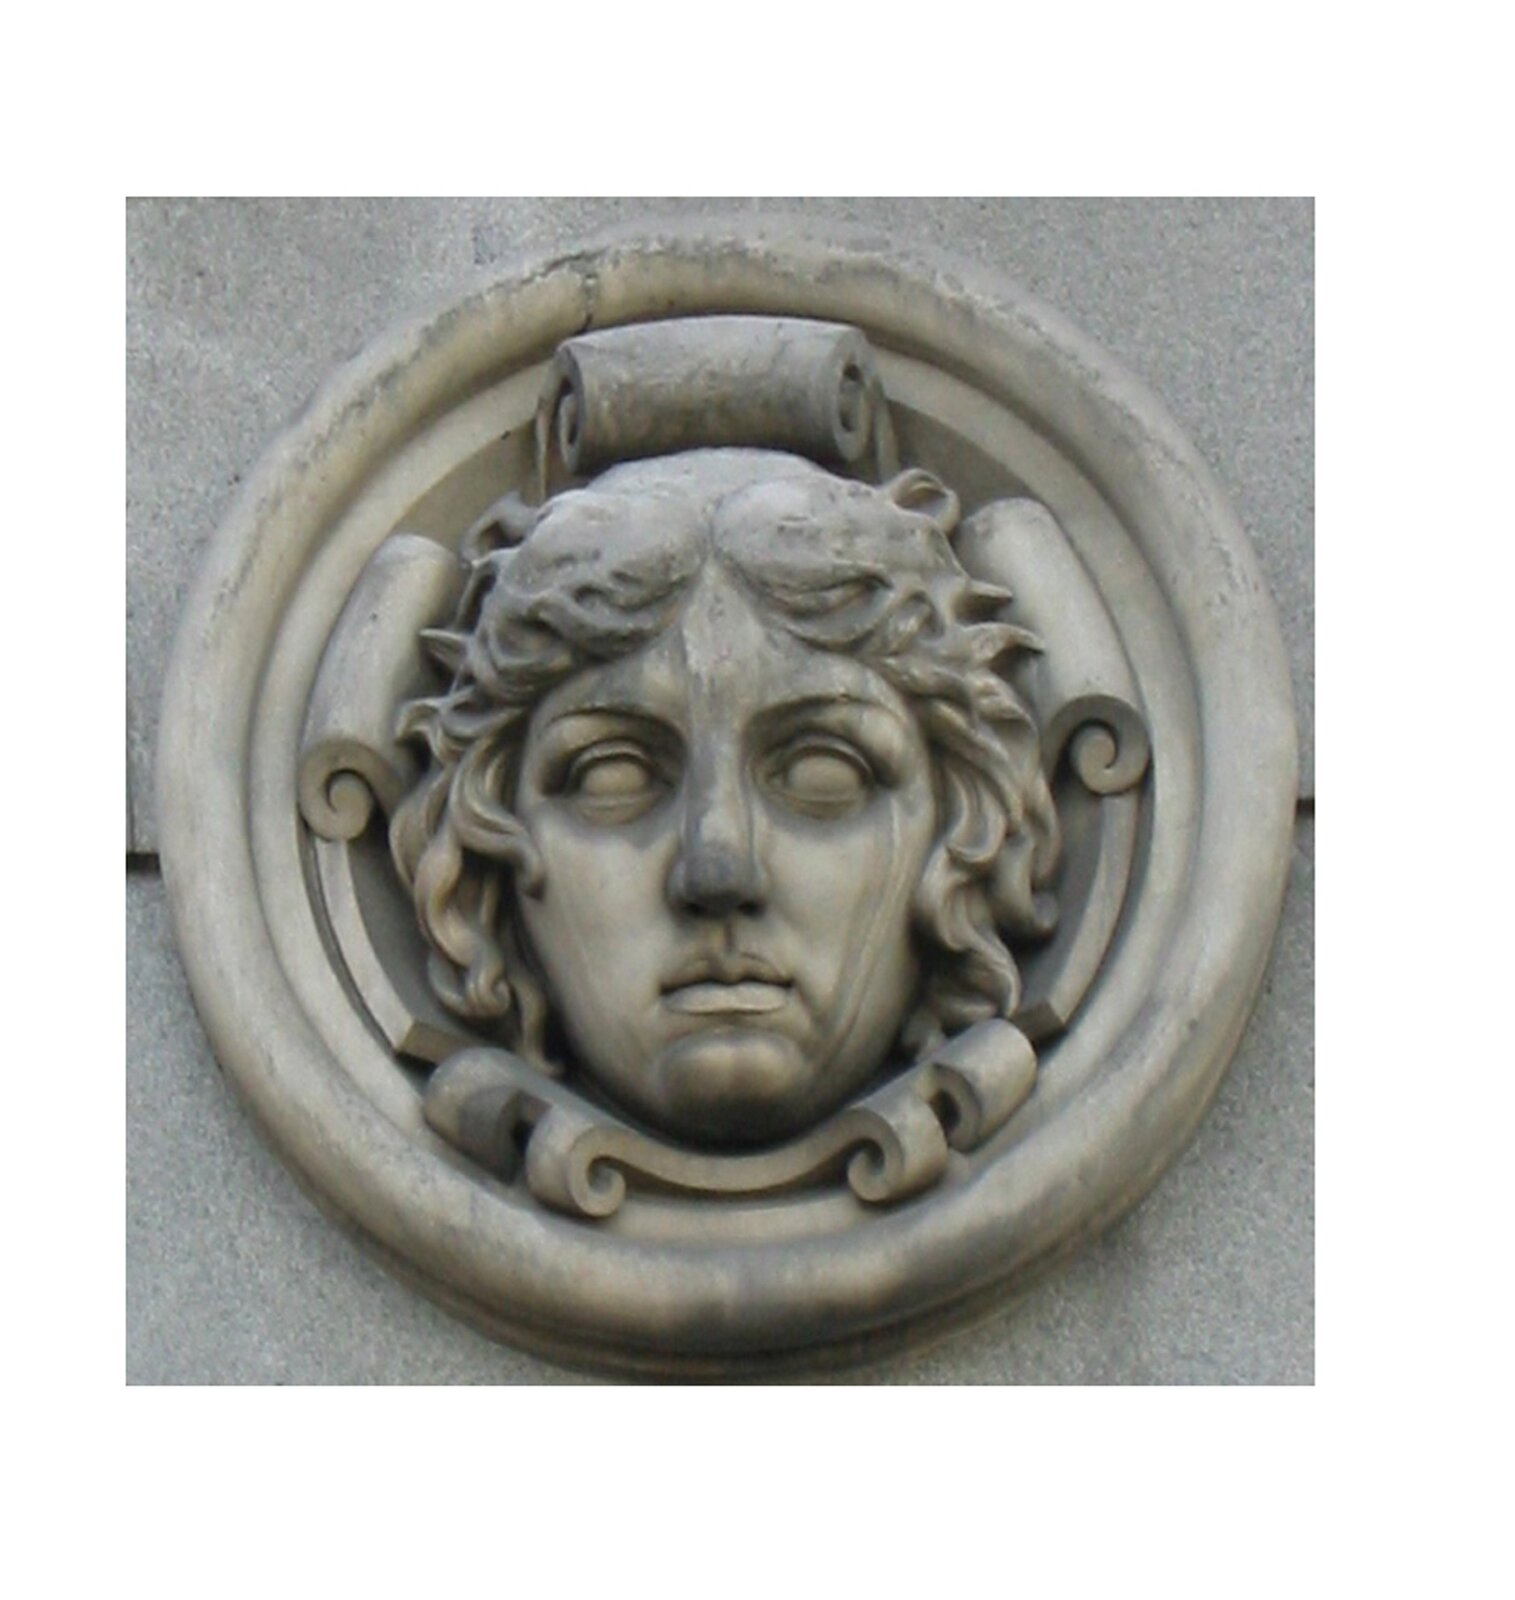 Ilustracja przedstawia ornament – medalion. Ten element dekoracyjny przedstawia twarz młodej kobiety z krótkimi kręconymi włosami. Element ten jest okrągły i znajduje się prawdopodobnie na ścianie.